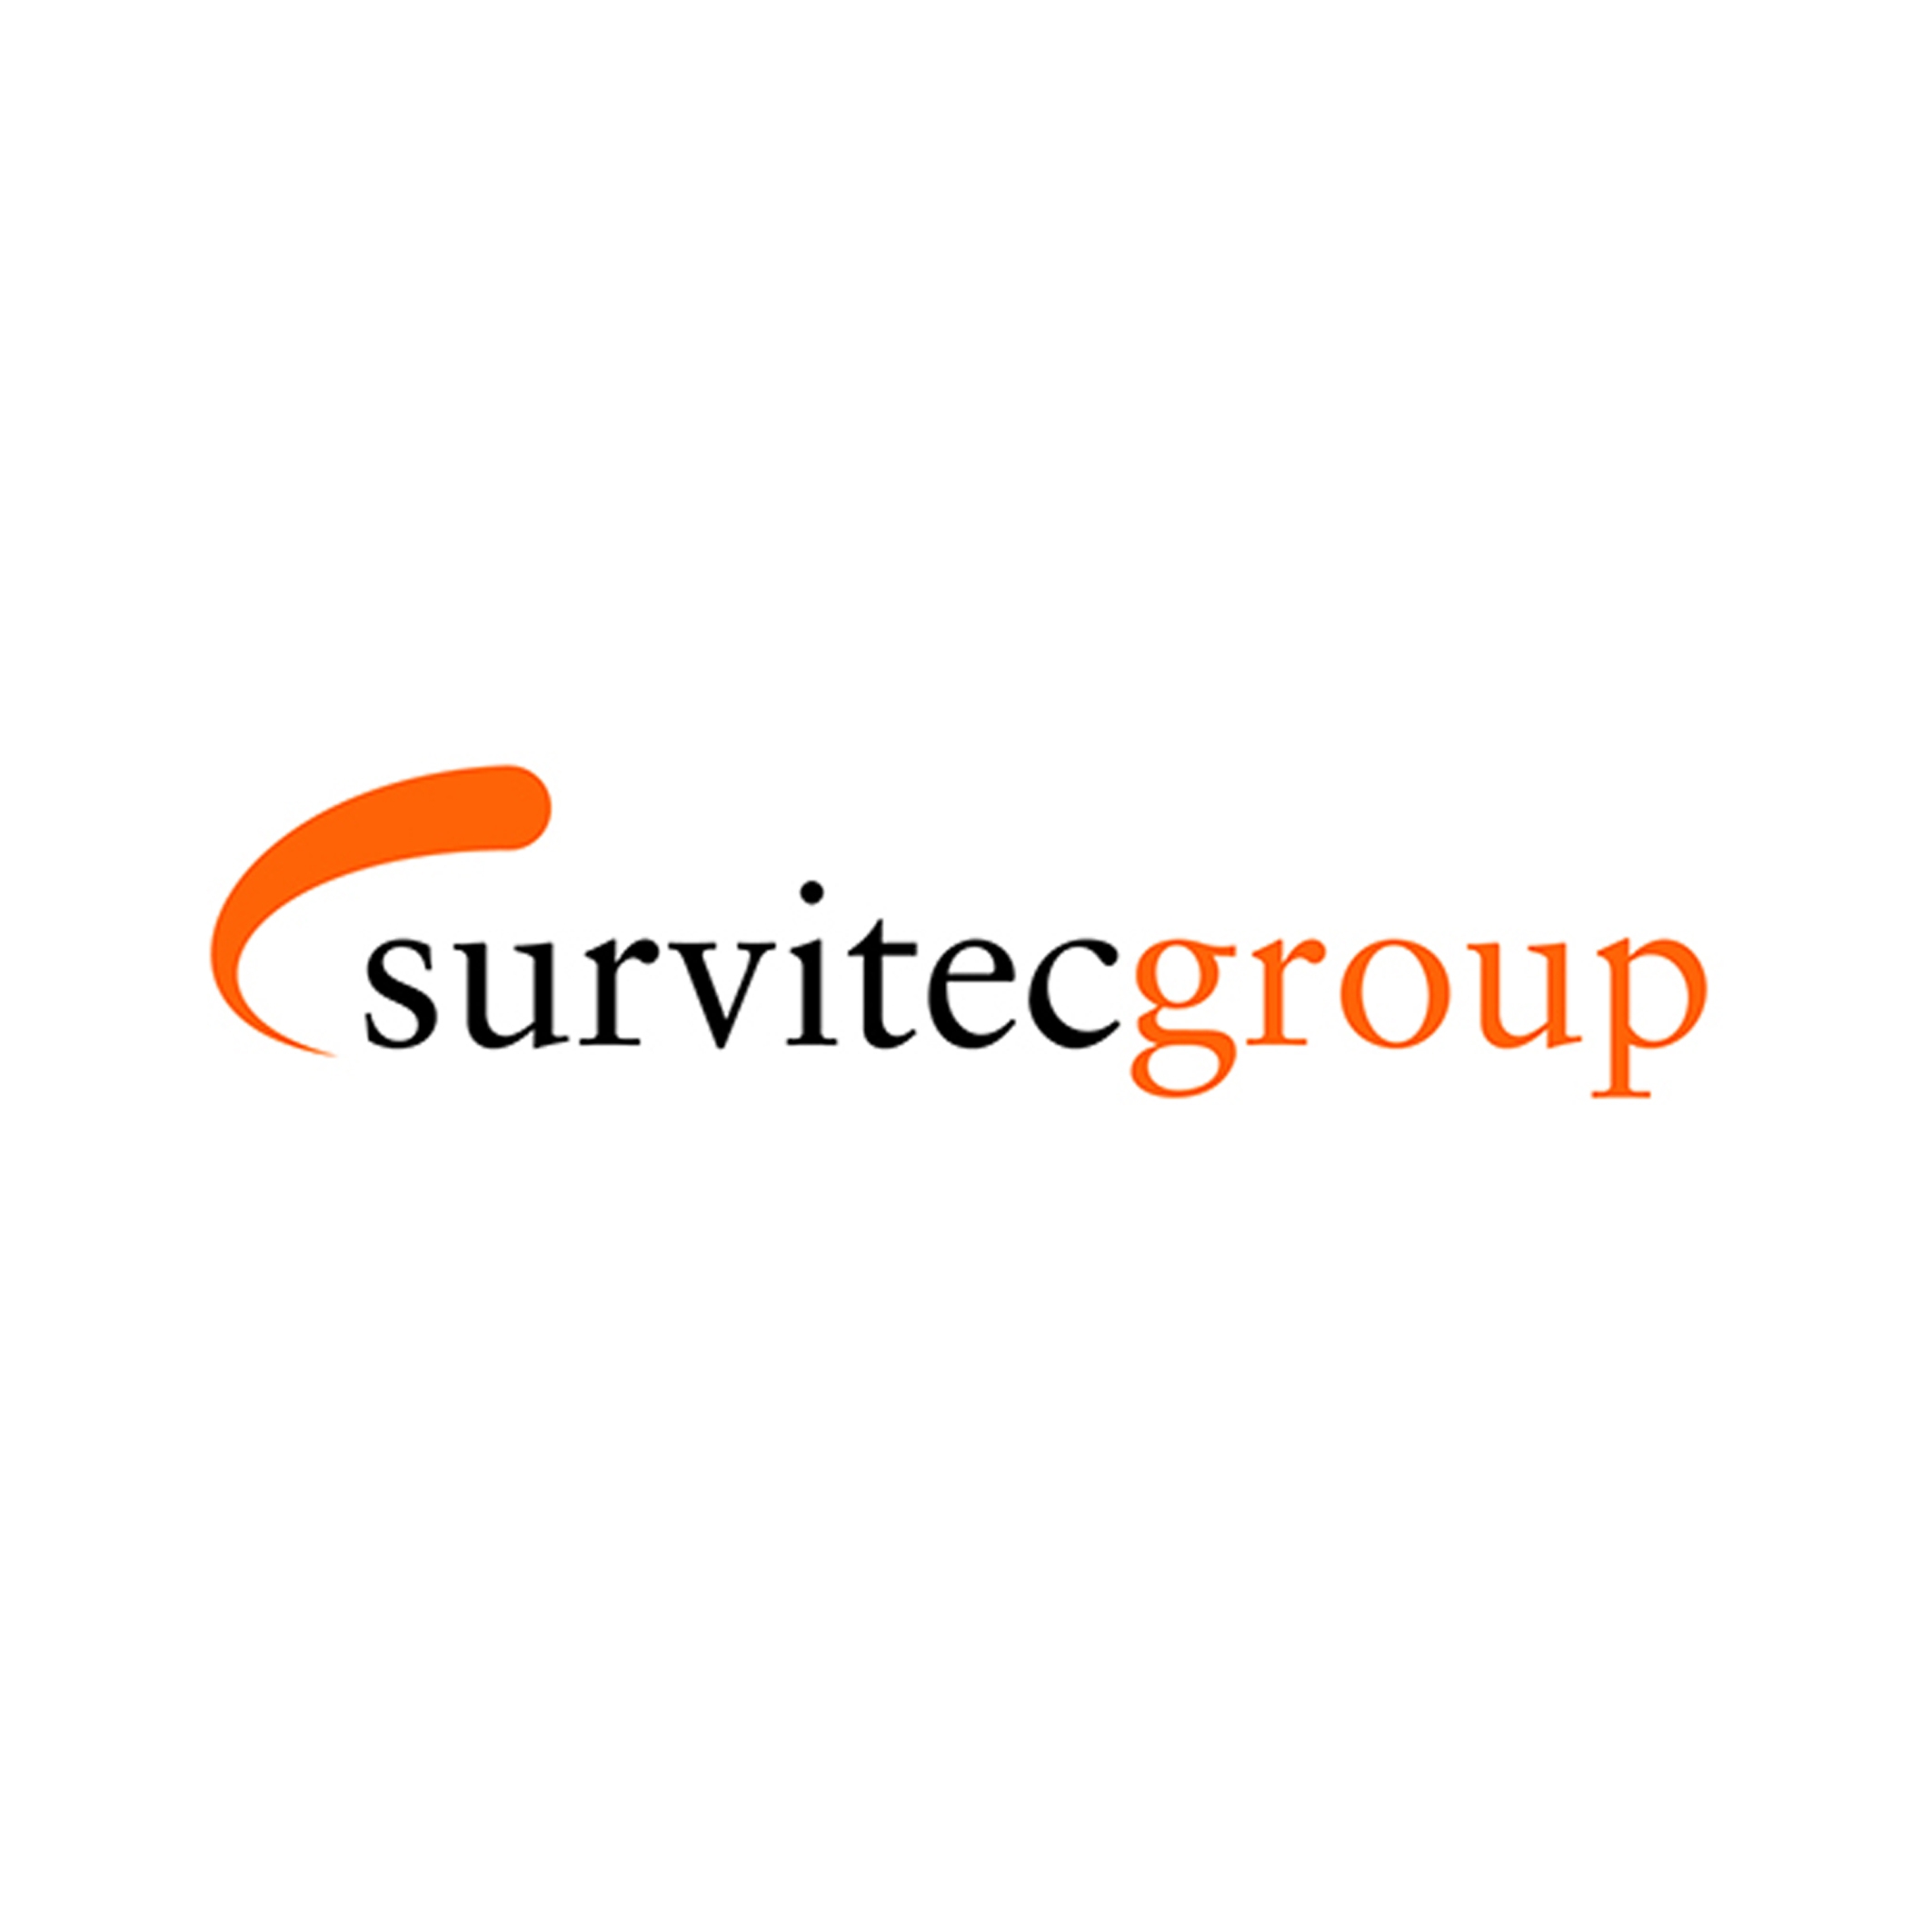 survitecgroup_resize